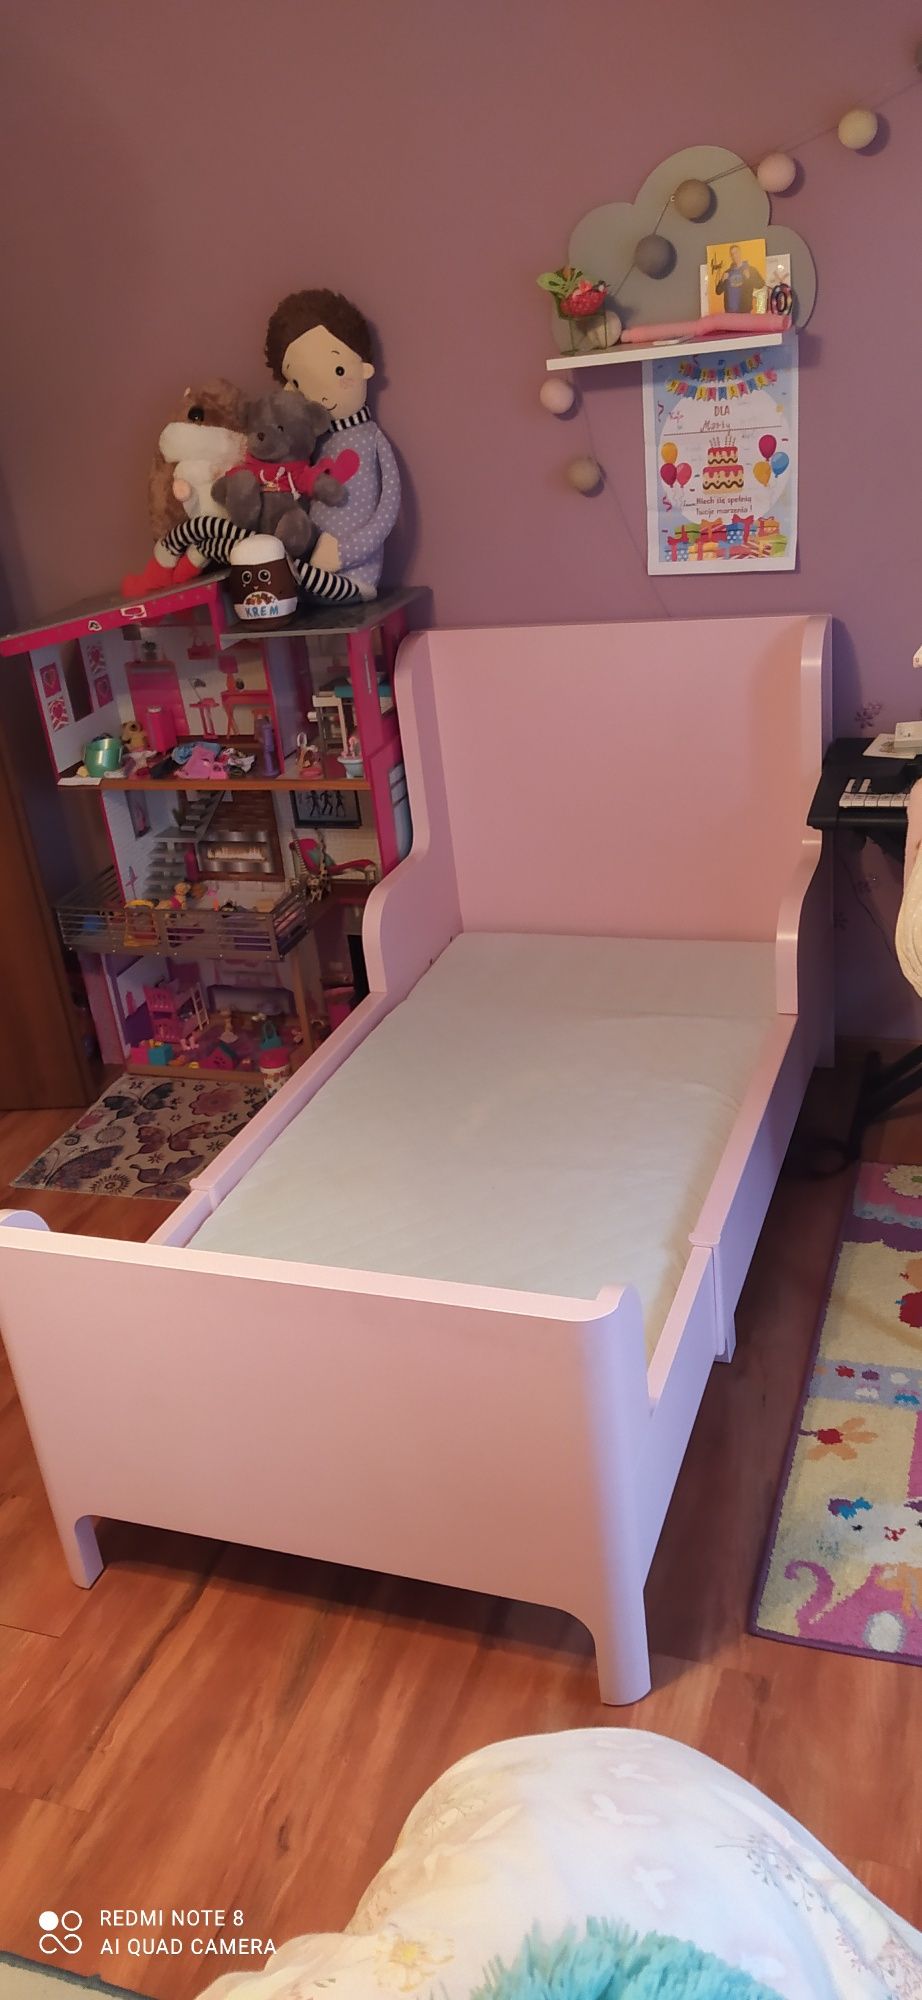 Łóżko dziecięce Ikea rosnące wraz z dzieckiem BUSUNGE